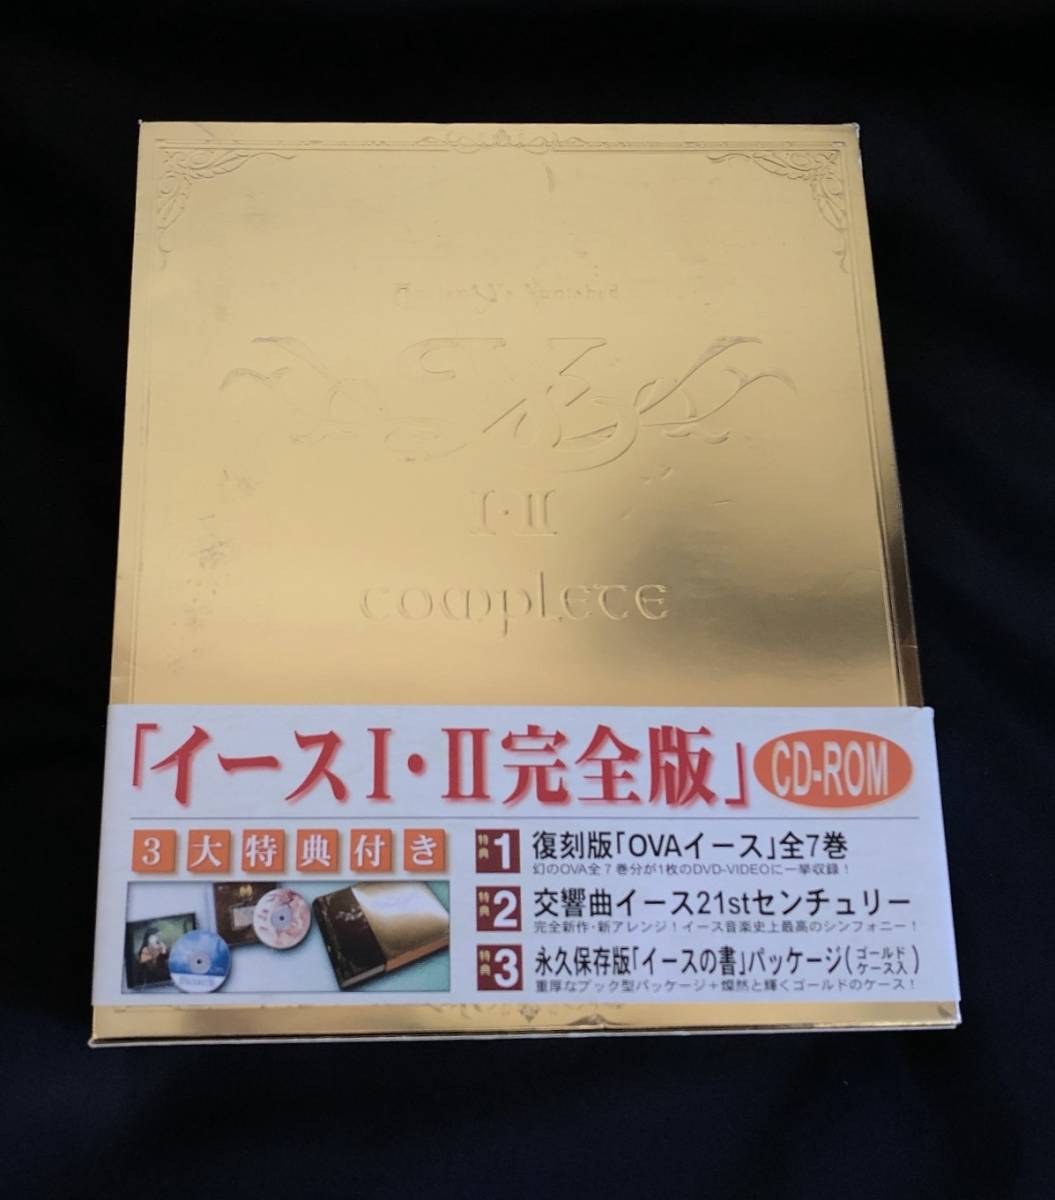 お買い得品 PC Windows イース I II 完全版 CD-ROM 日本ファルコム 